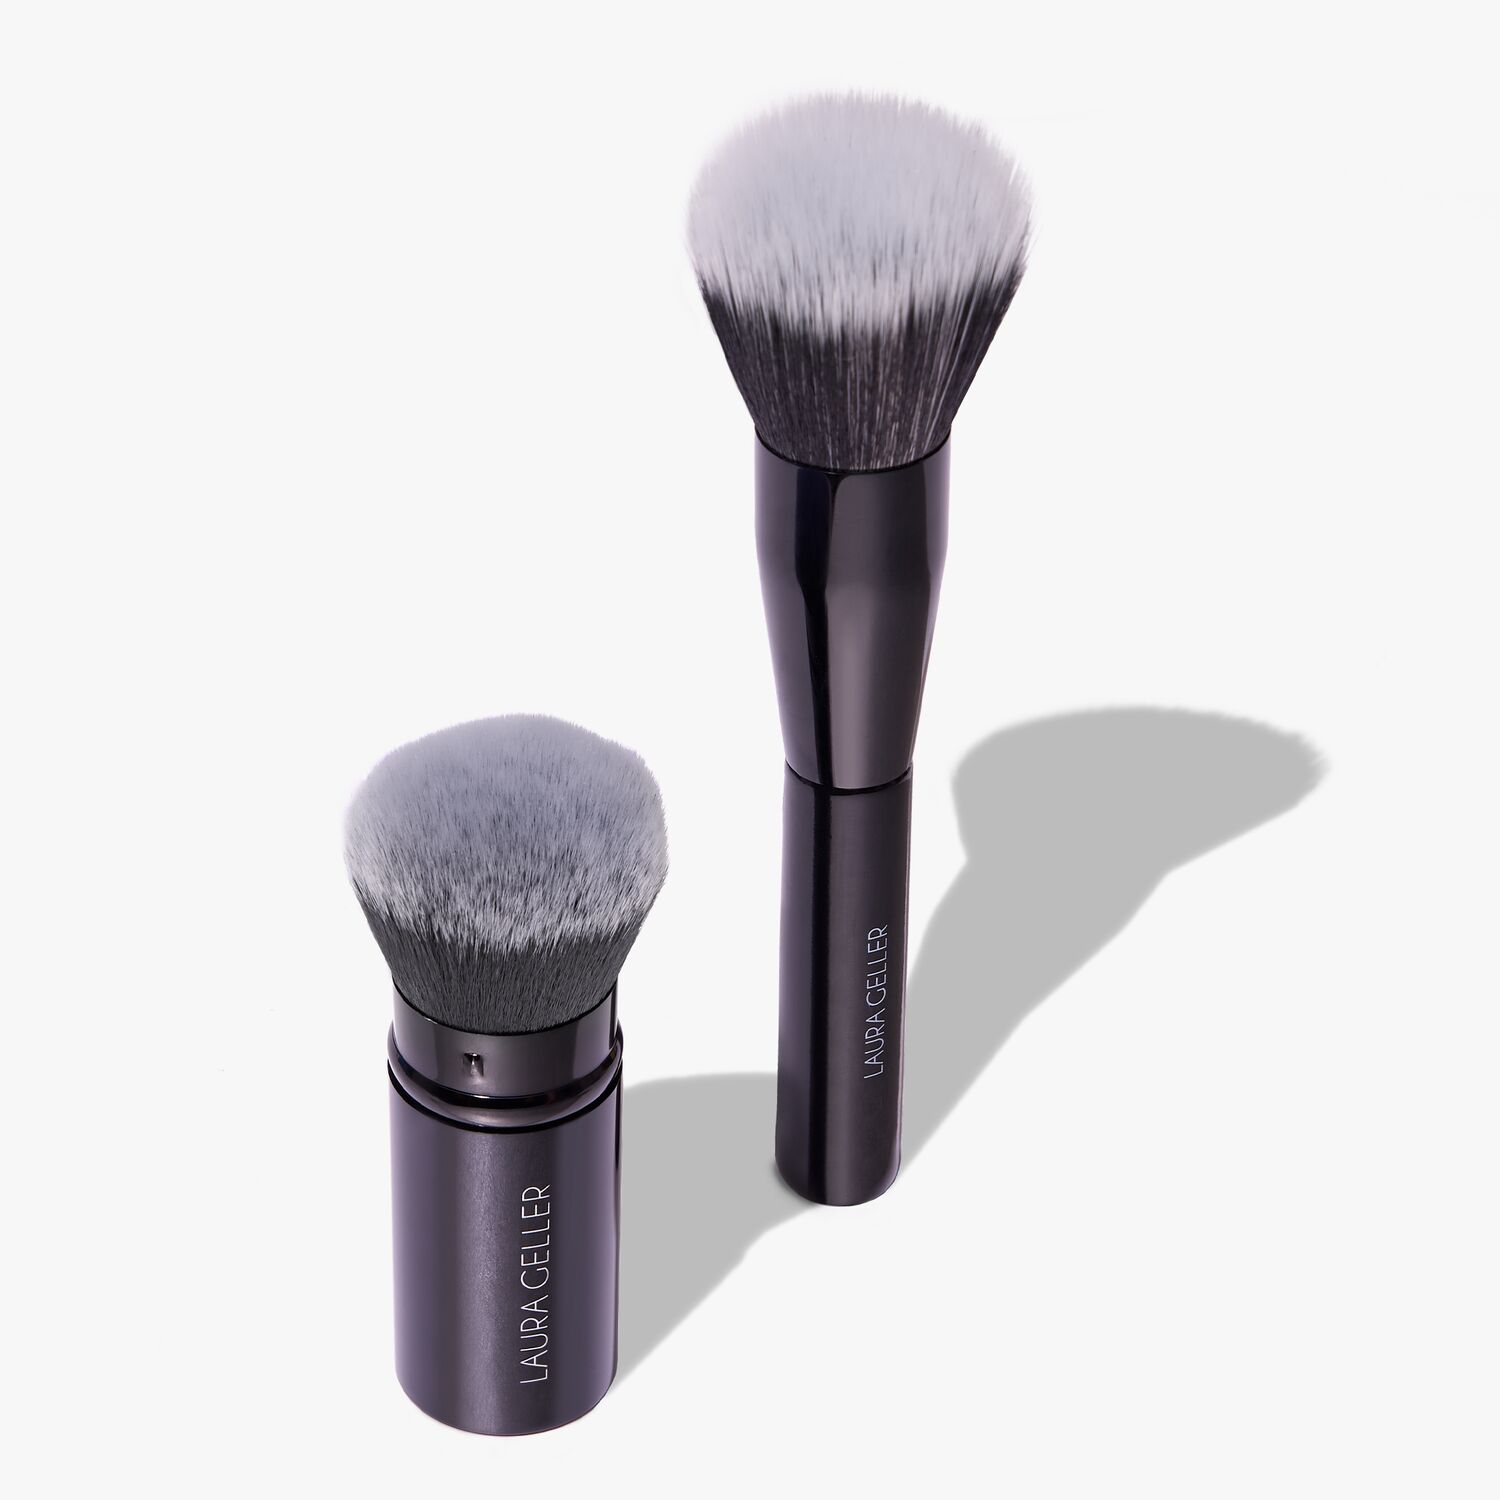 Retractable Brush For Travel Makeup - 8 In 1 Travel Loose Powder Brush,  Angled Brush, Eyeshadow Brush, Beauty Sponge, Foundation Blending Lip Brush  Po